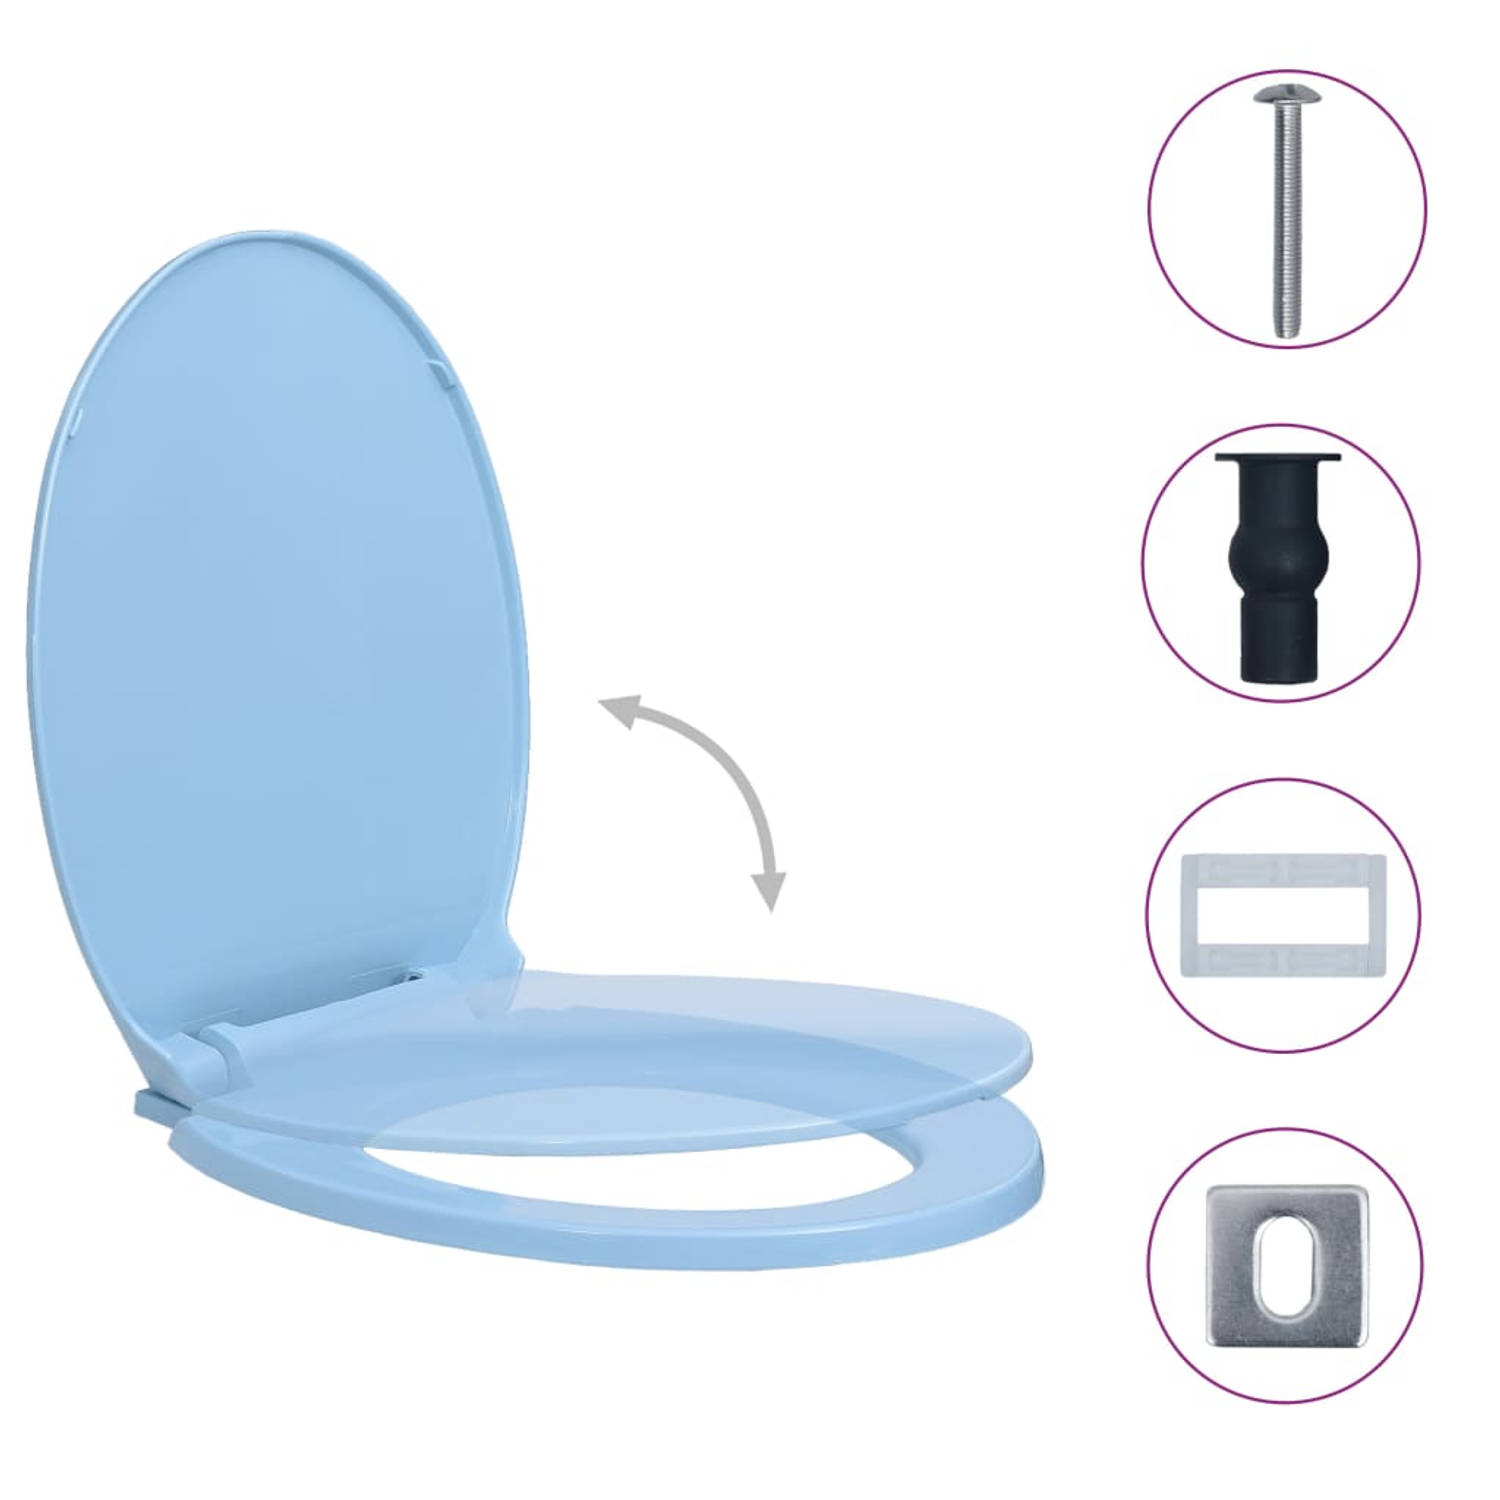 The Living Store Toiletbril Blauw Ovaal 46 x 34 cm - Soft-close Quick-release - Geschikt voor alle reguliere toiletpotten